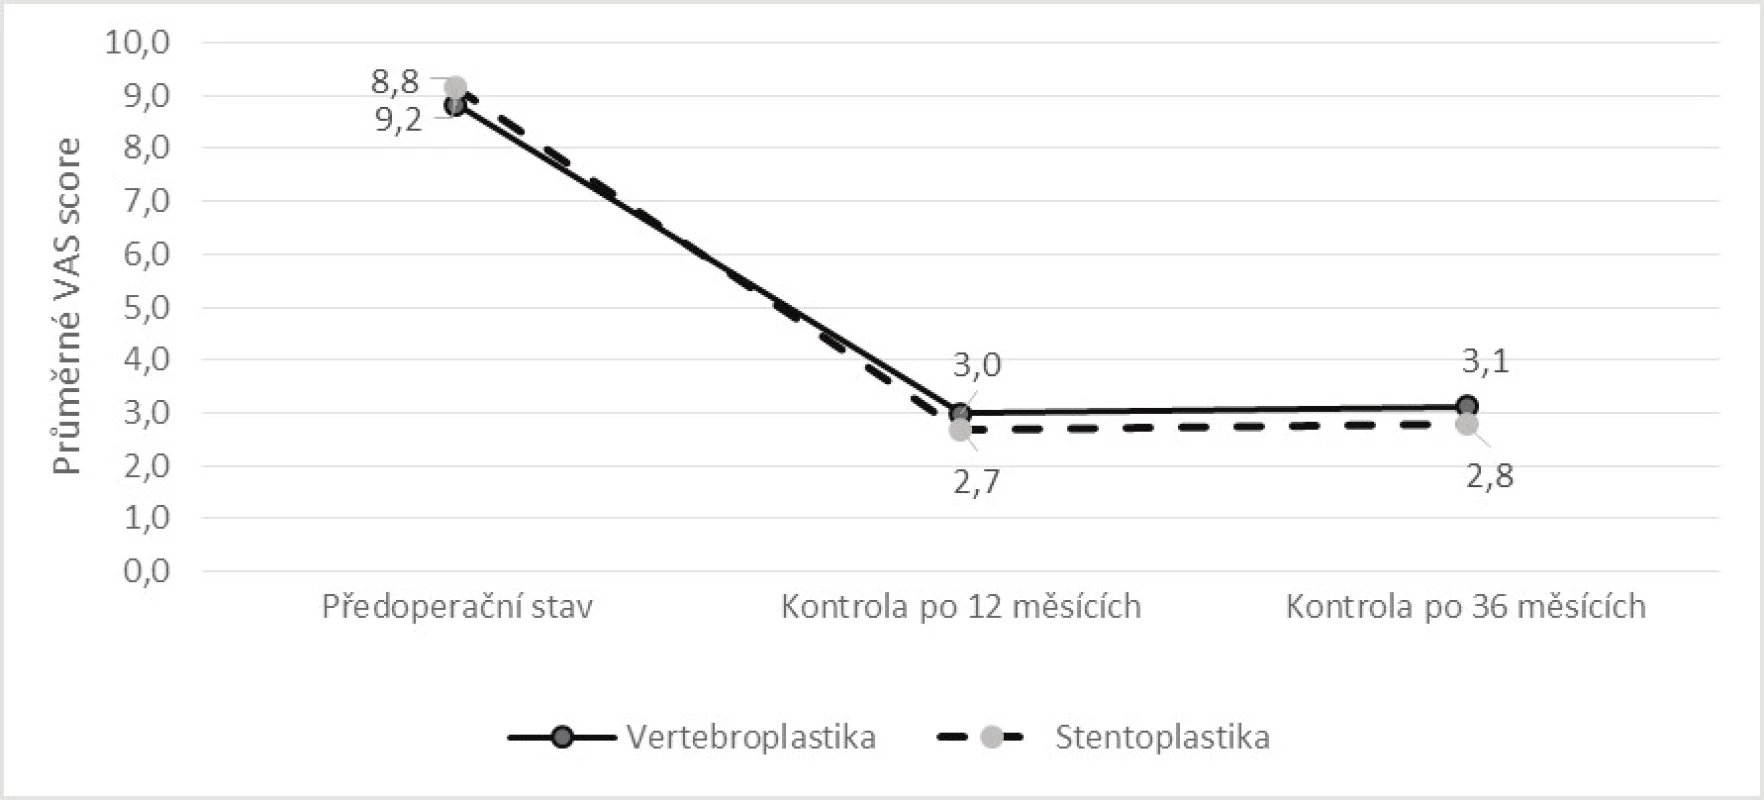 Srovnání vývoje průměrné hodnoty VAS v období od operace do kontroly po 36 měsících dle způsobu léčby